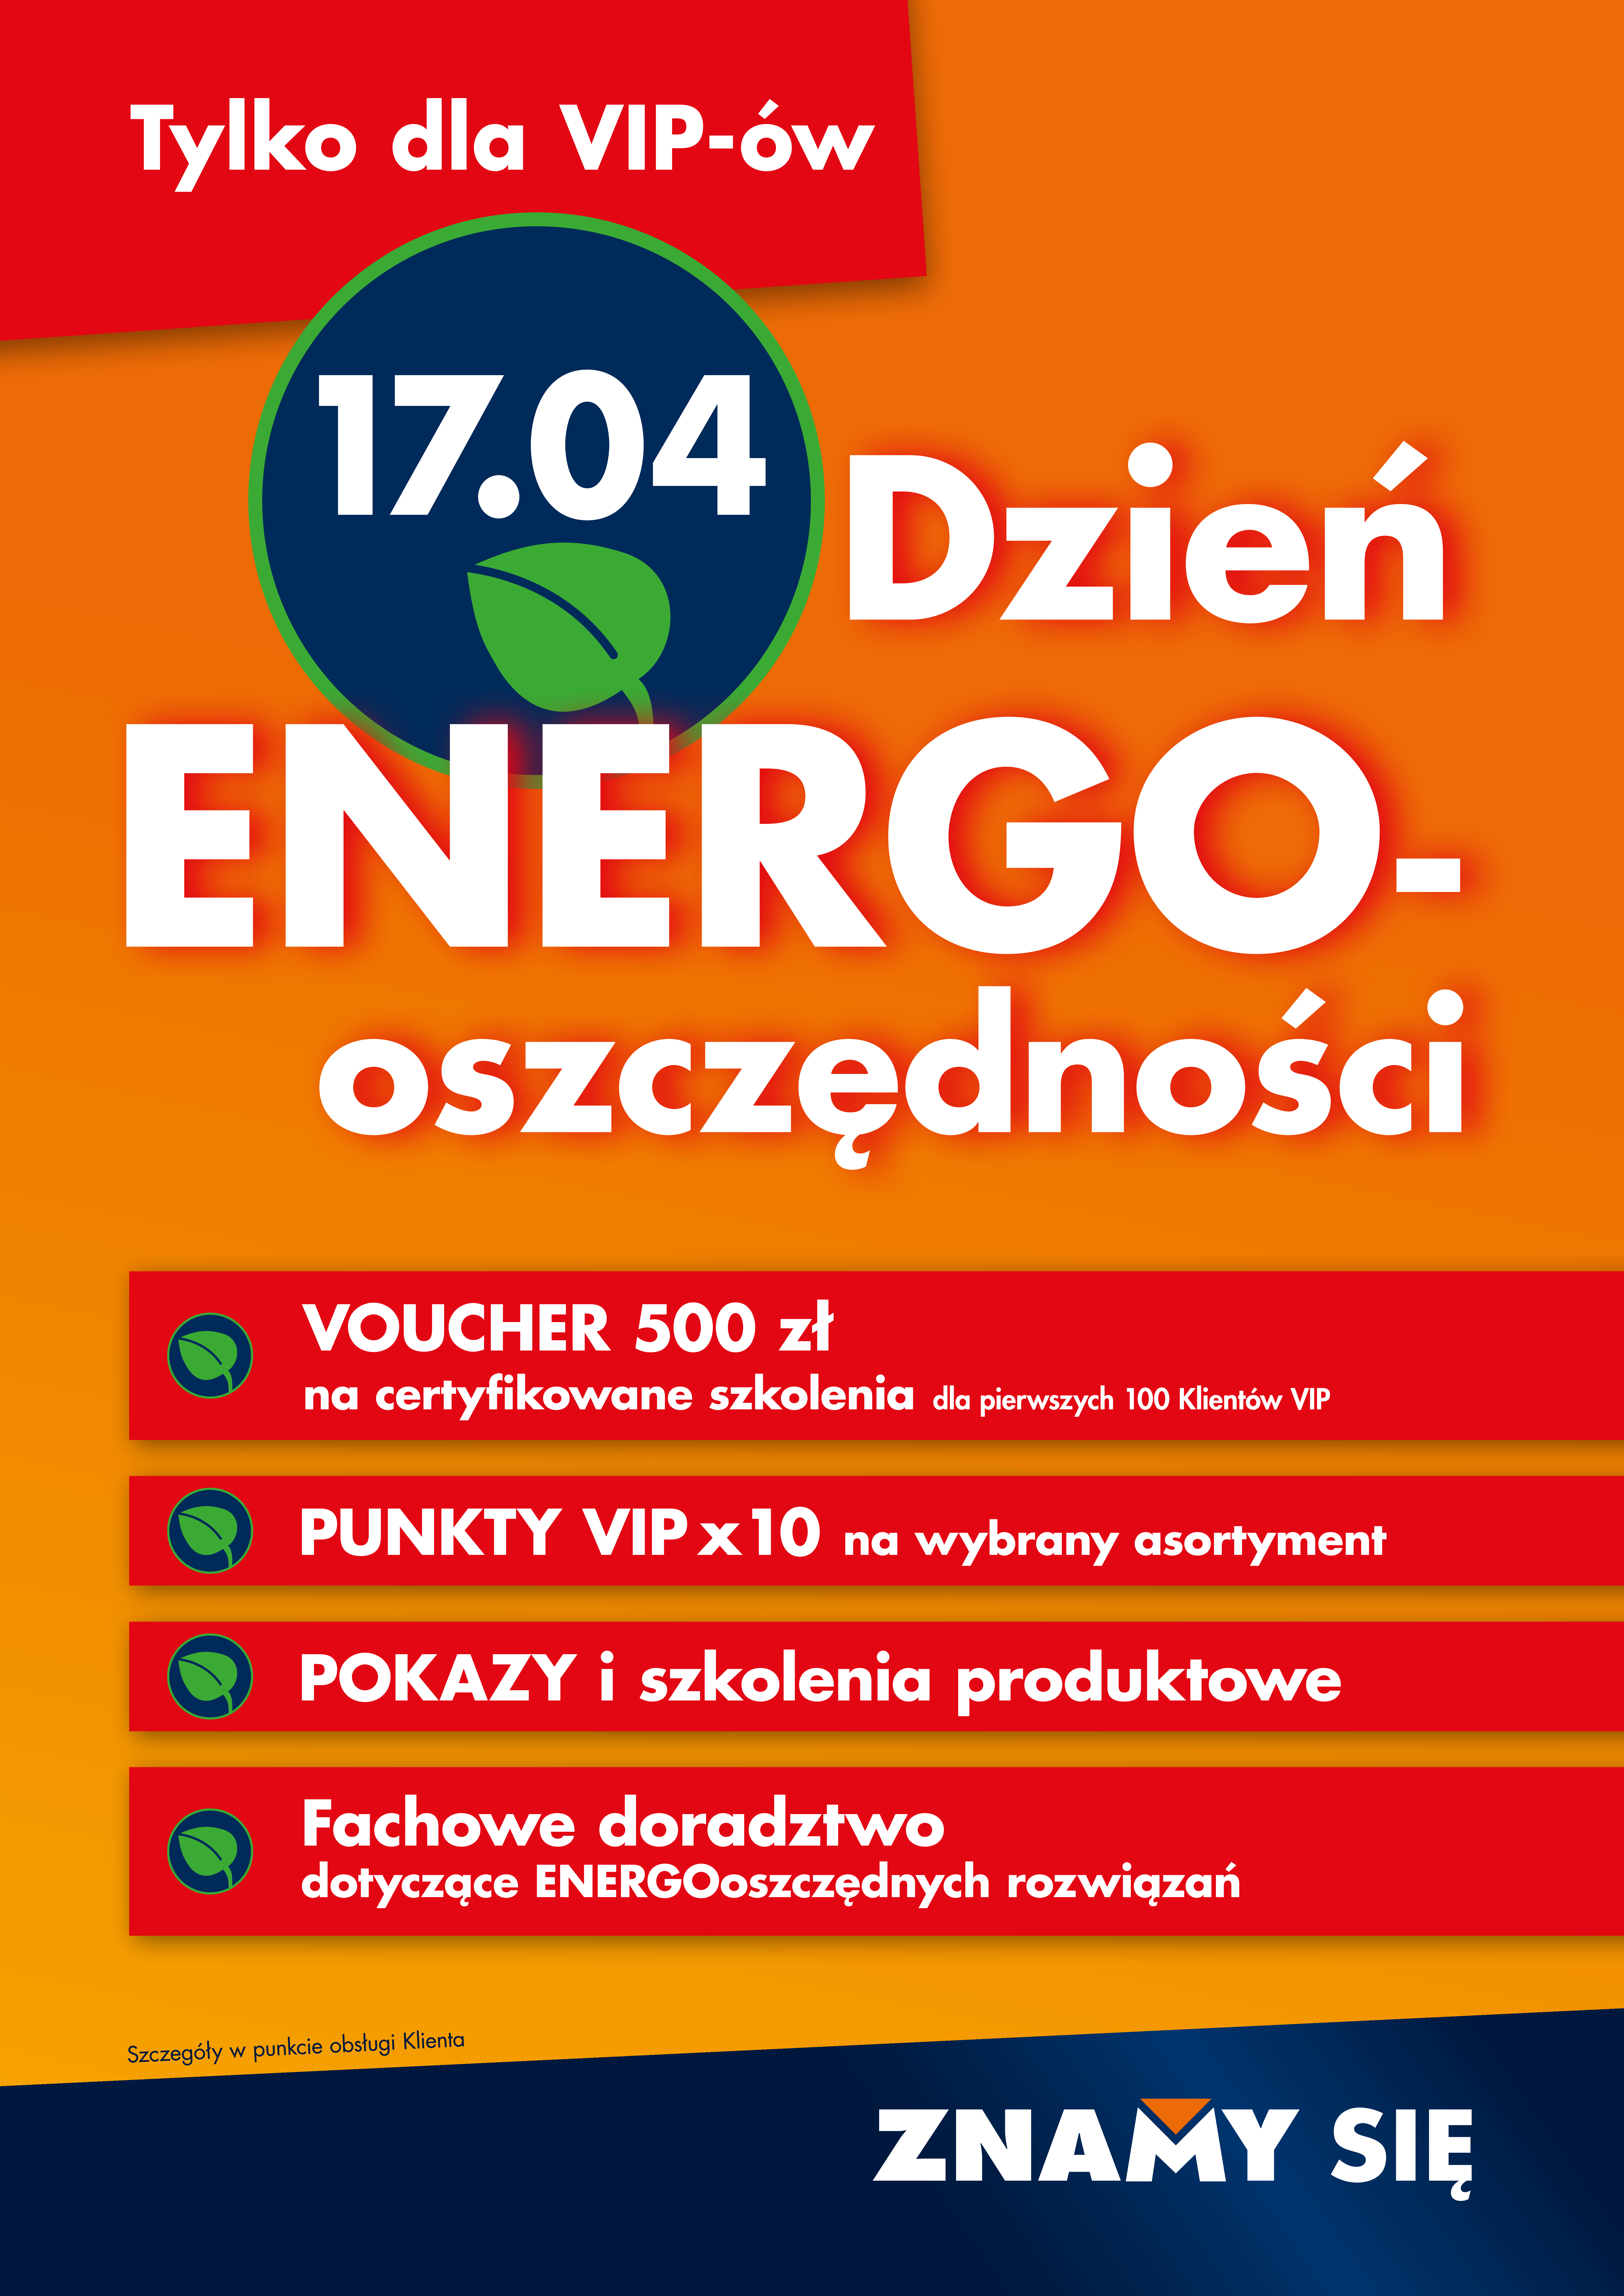 Dzień Energooszczędności w Bricoman Lublin